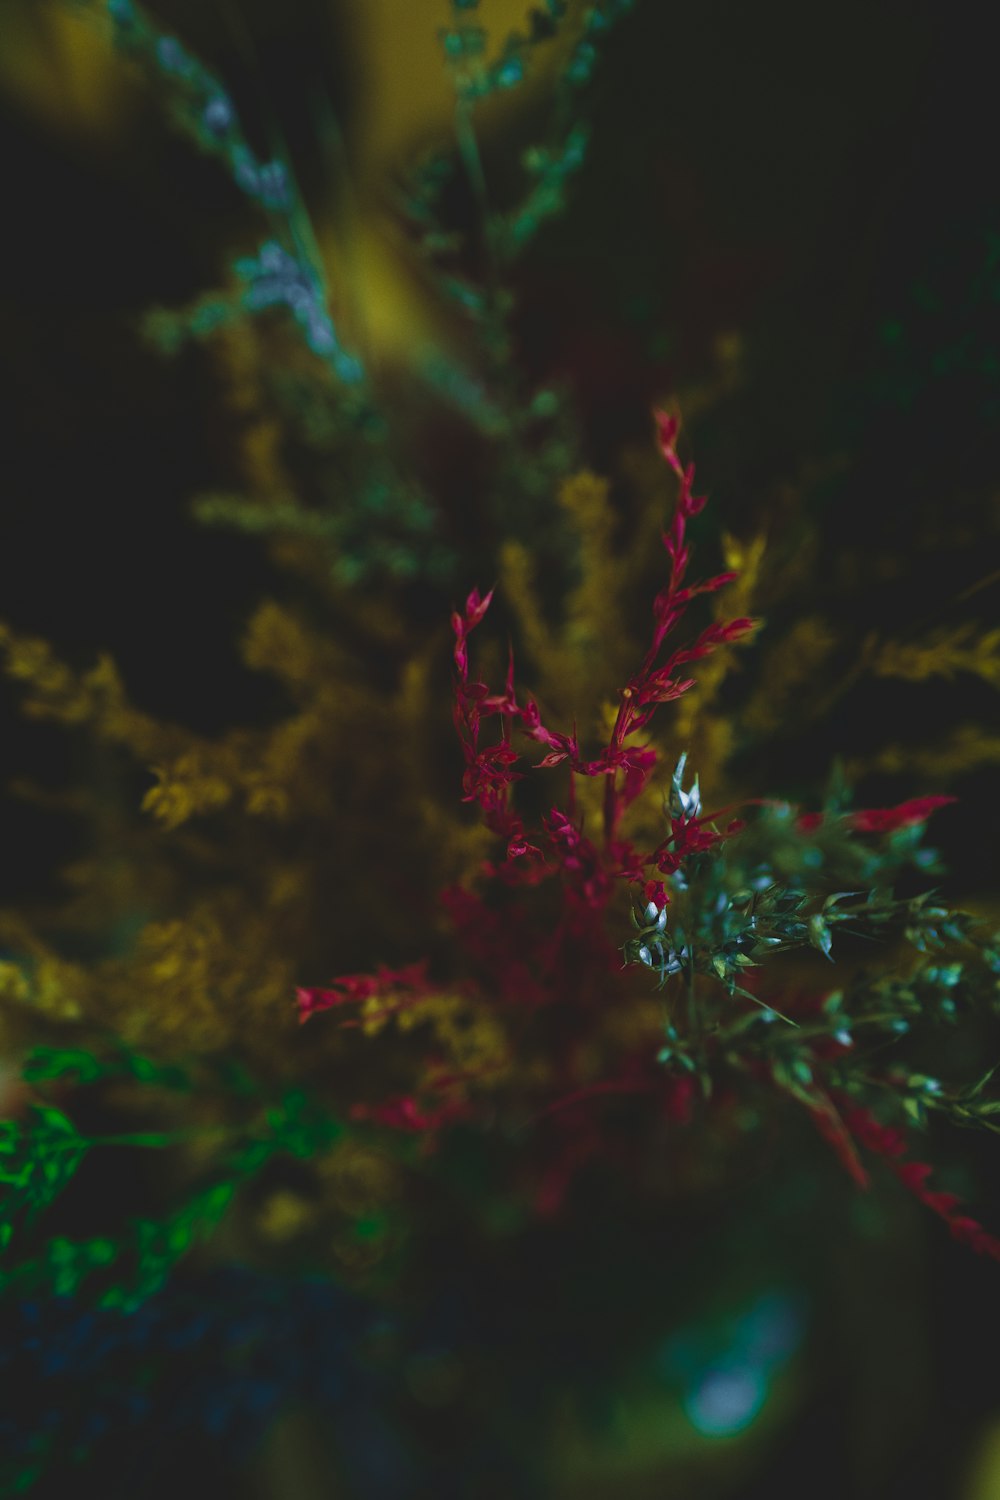 pianta rossa e verde nella fotografia ravvicinata